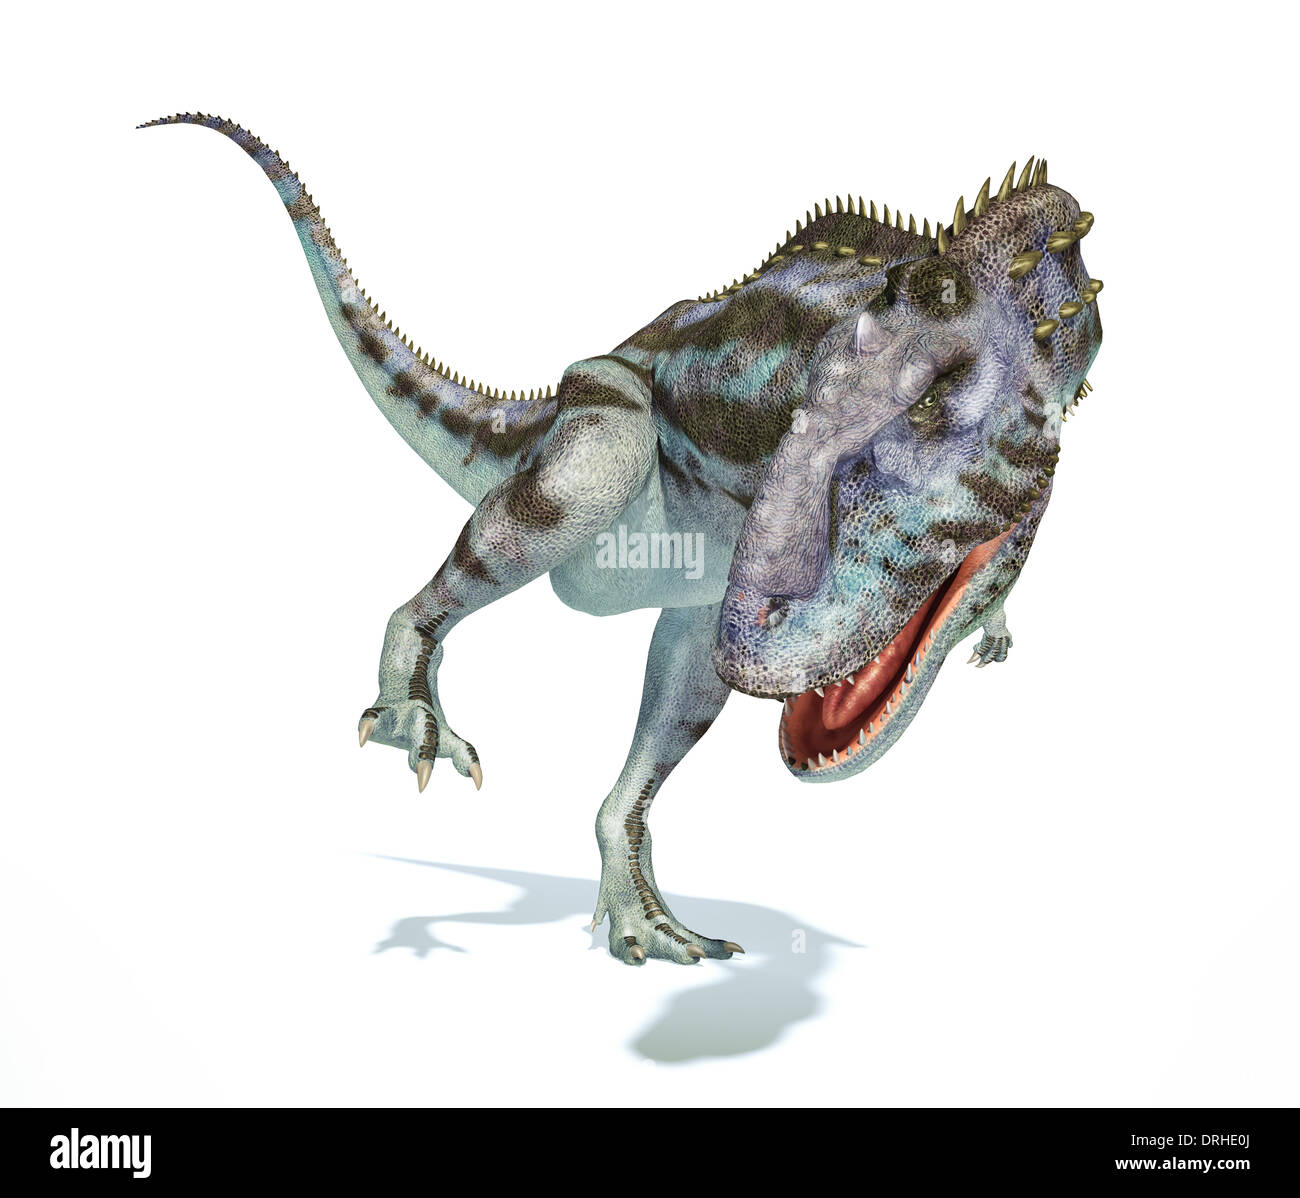 Rajasaurus Dinosaurier, Ganzkörper fotorealistische Darstellung, wissenschaftlich korrekt. Dynamische Ansicht auf weißem Hintergrund. Stockfoto